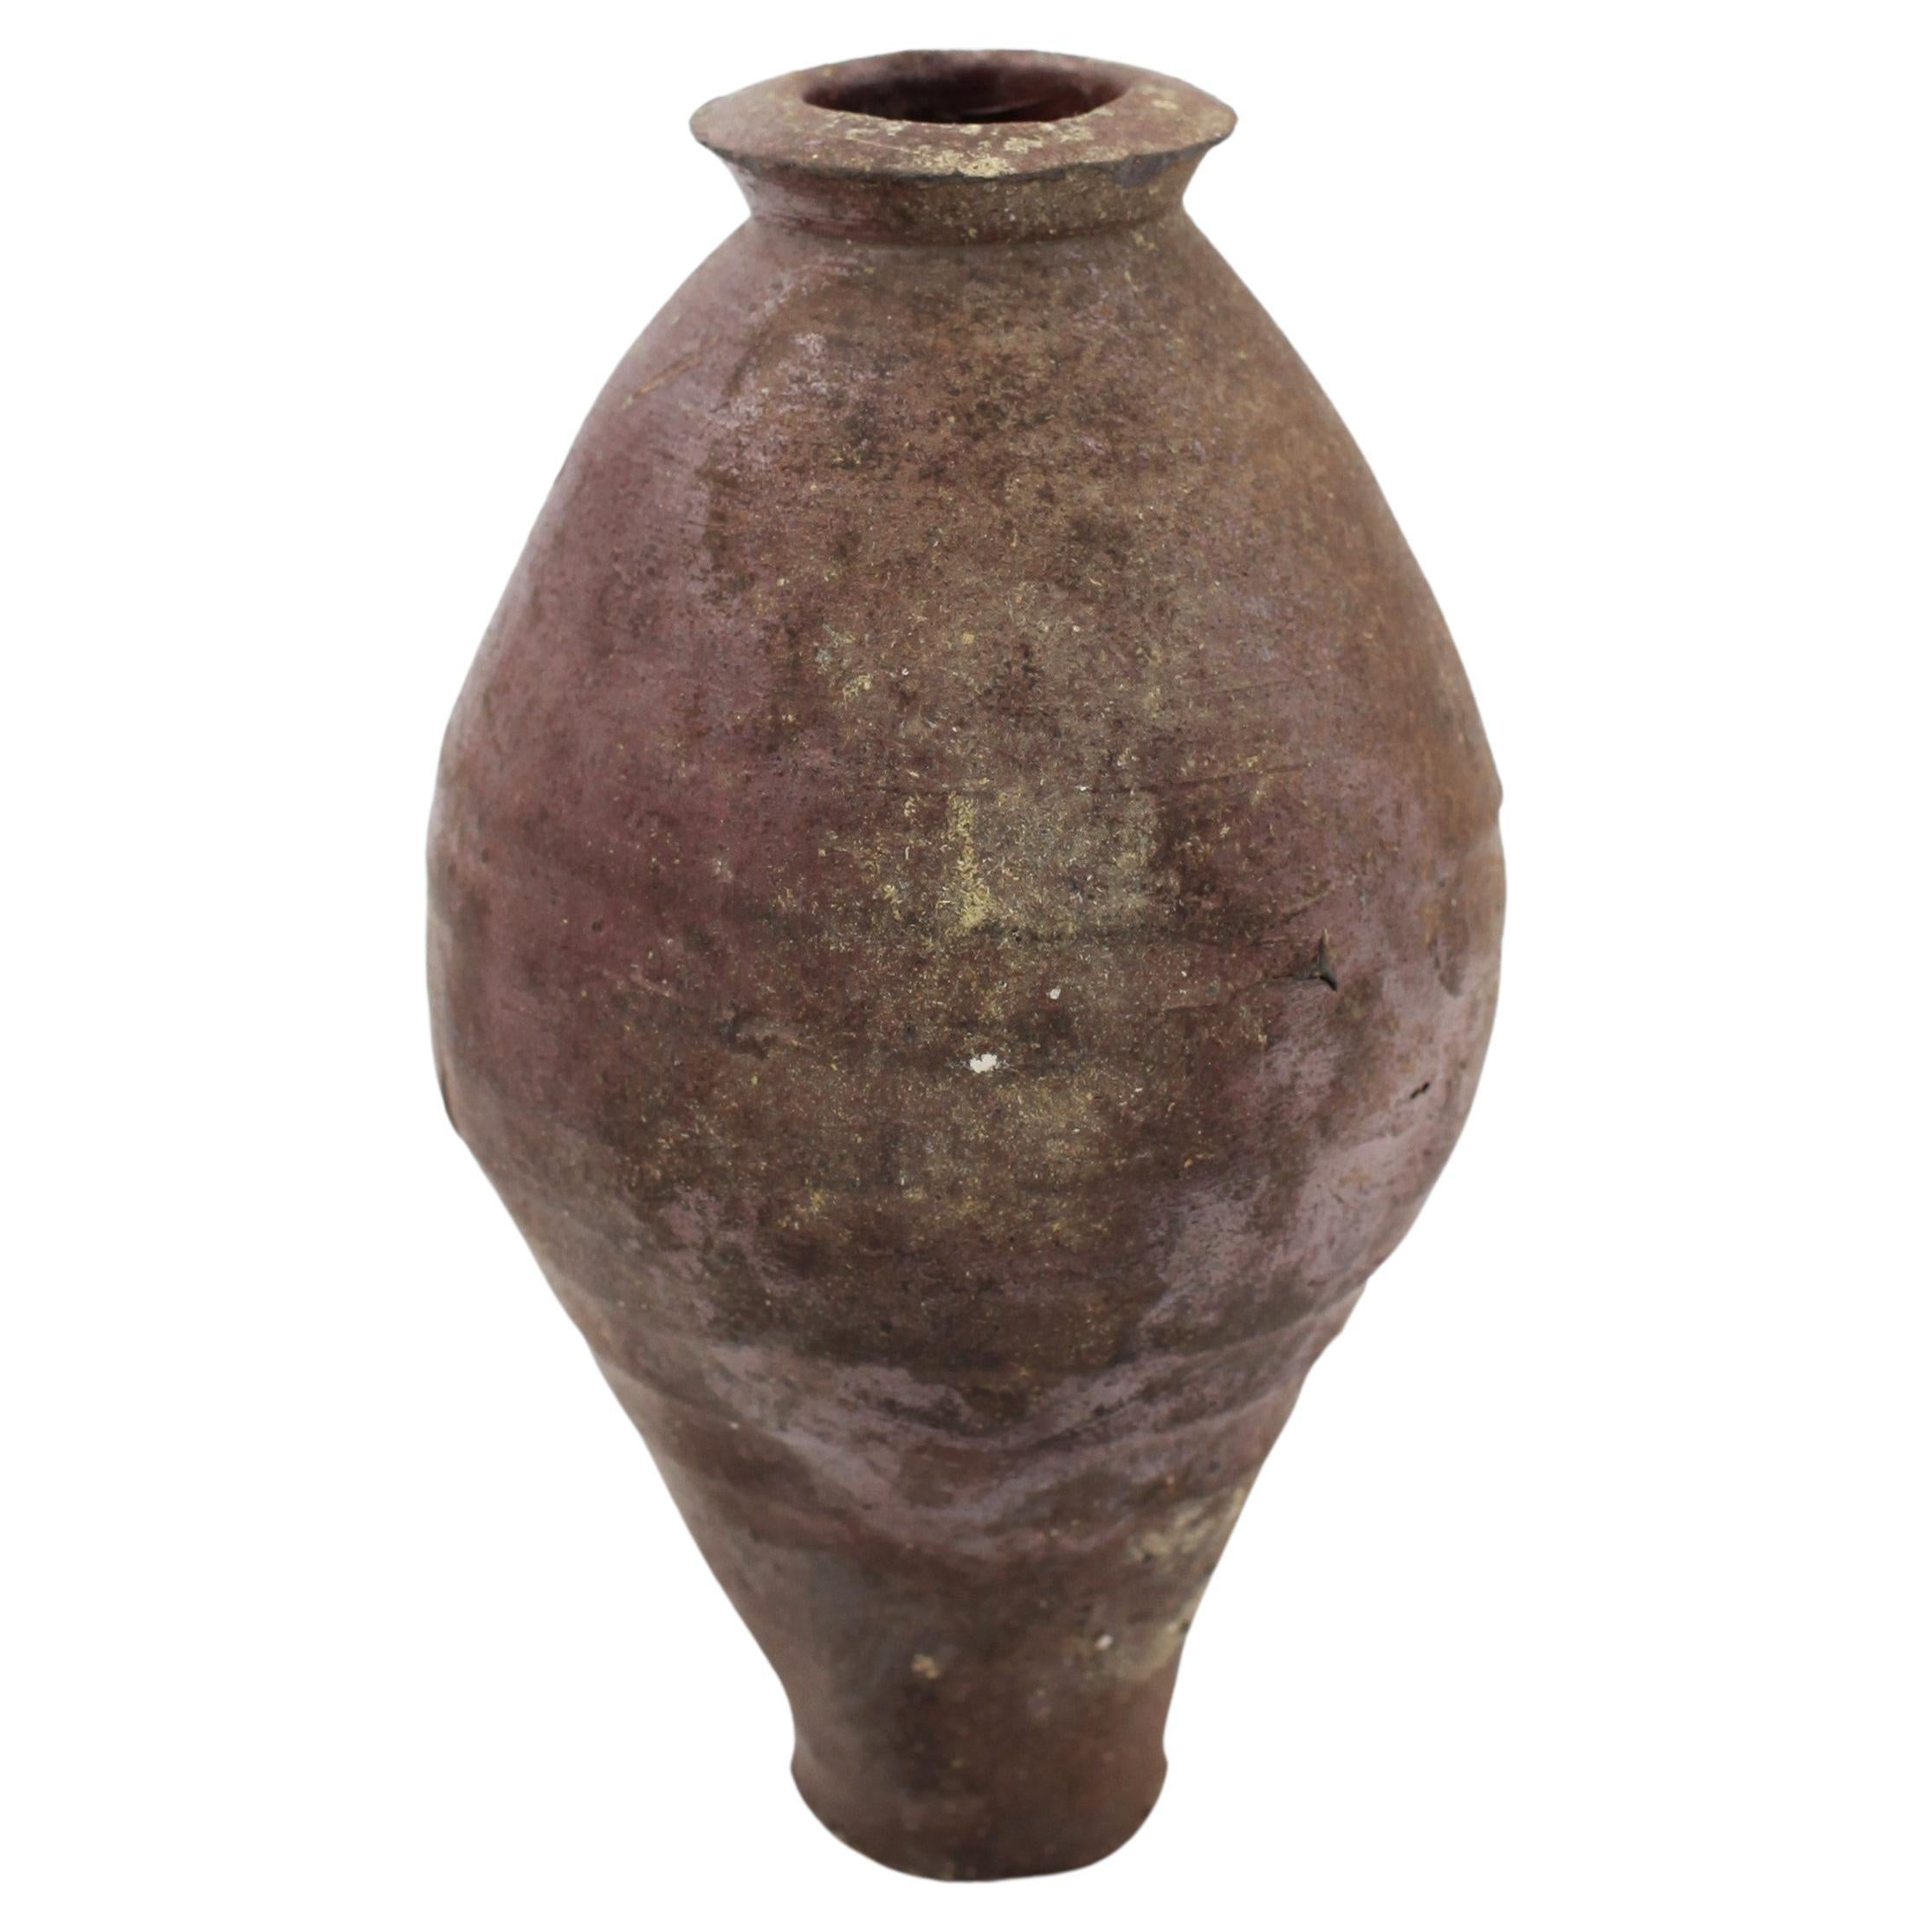 Asiatisches JAR/Gefäß aus dem 14. bis 16. Jahrhundert (möglicherweise Khmer)